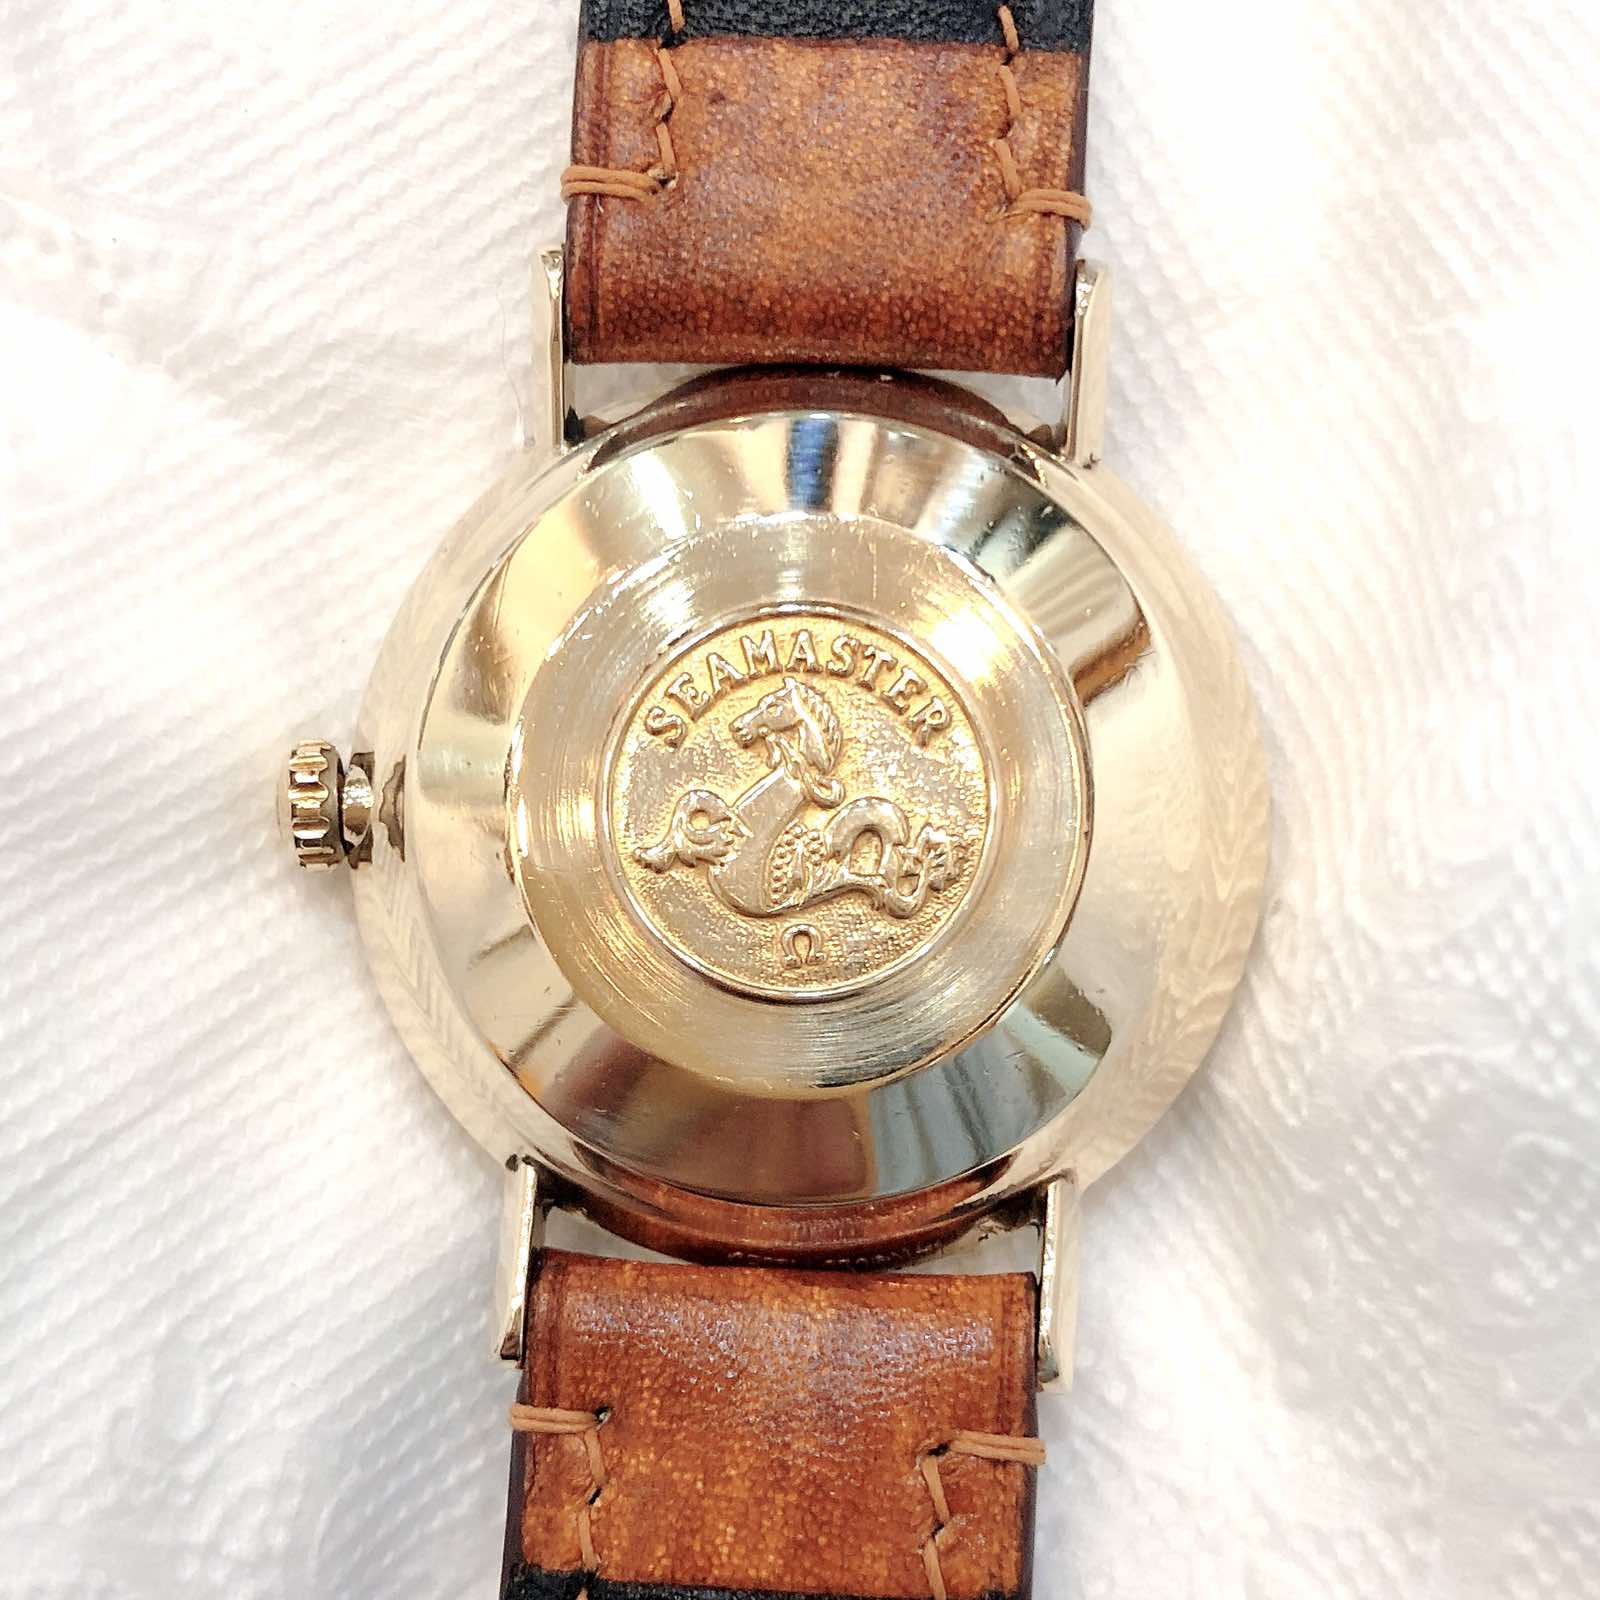 Đồng hồ cổ Omega seamaste De Ville automatic bọc vàng 14k chính hãng Thụy Sĩ